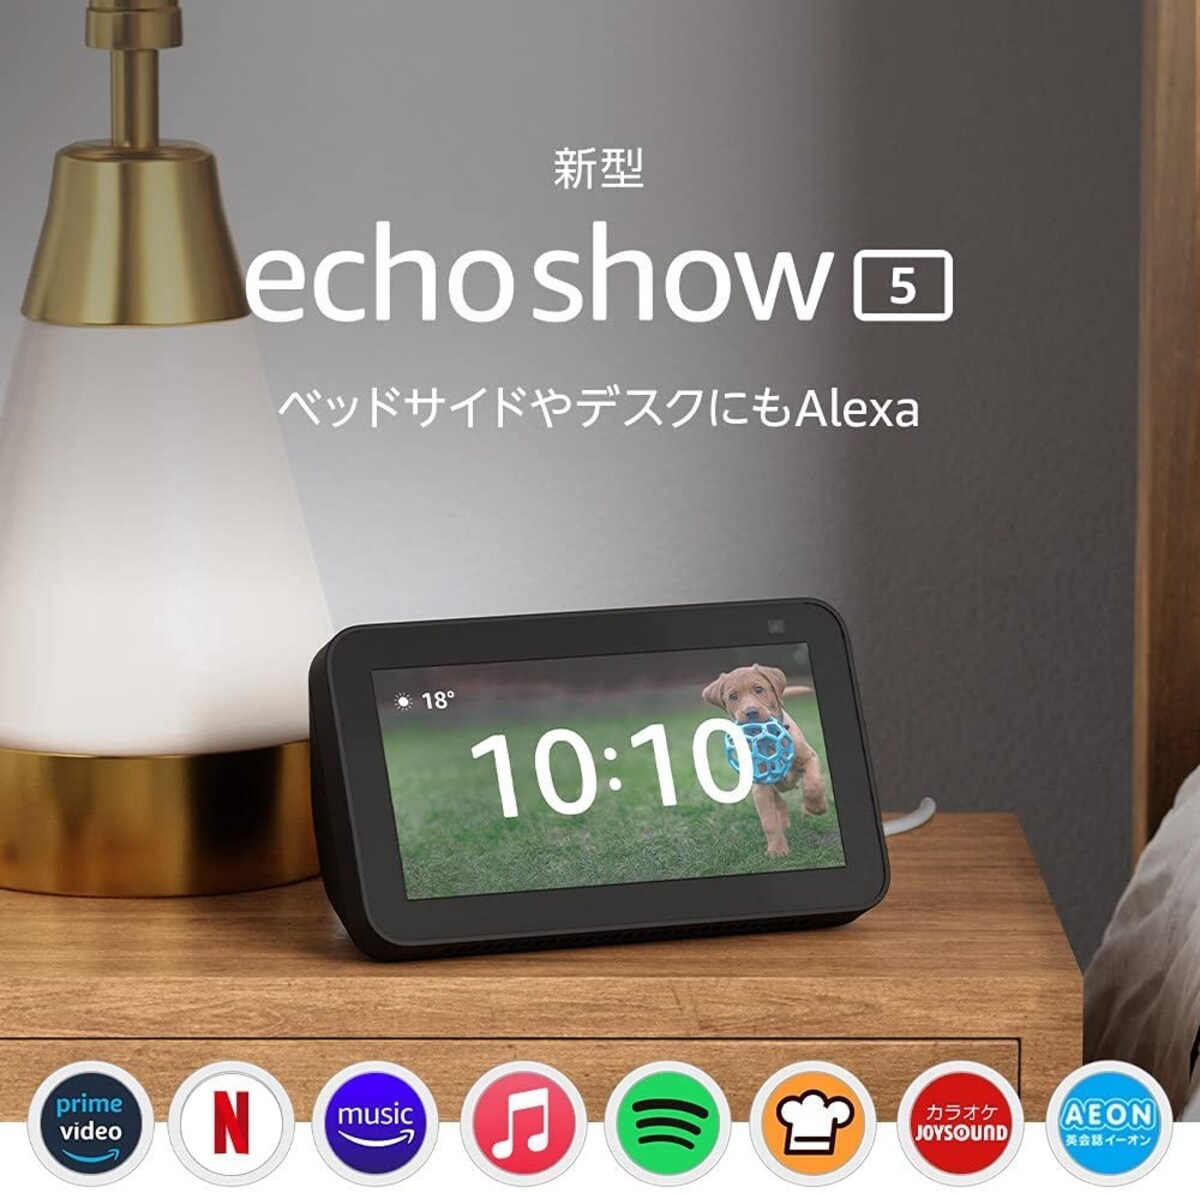 【新型】Echo Show 5 (エコーショー5) 第2世代 - スマートディスプレイ with Alexa画像